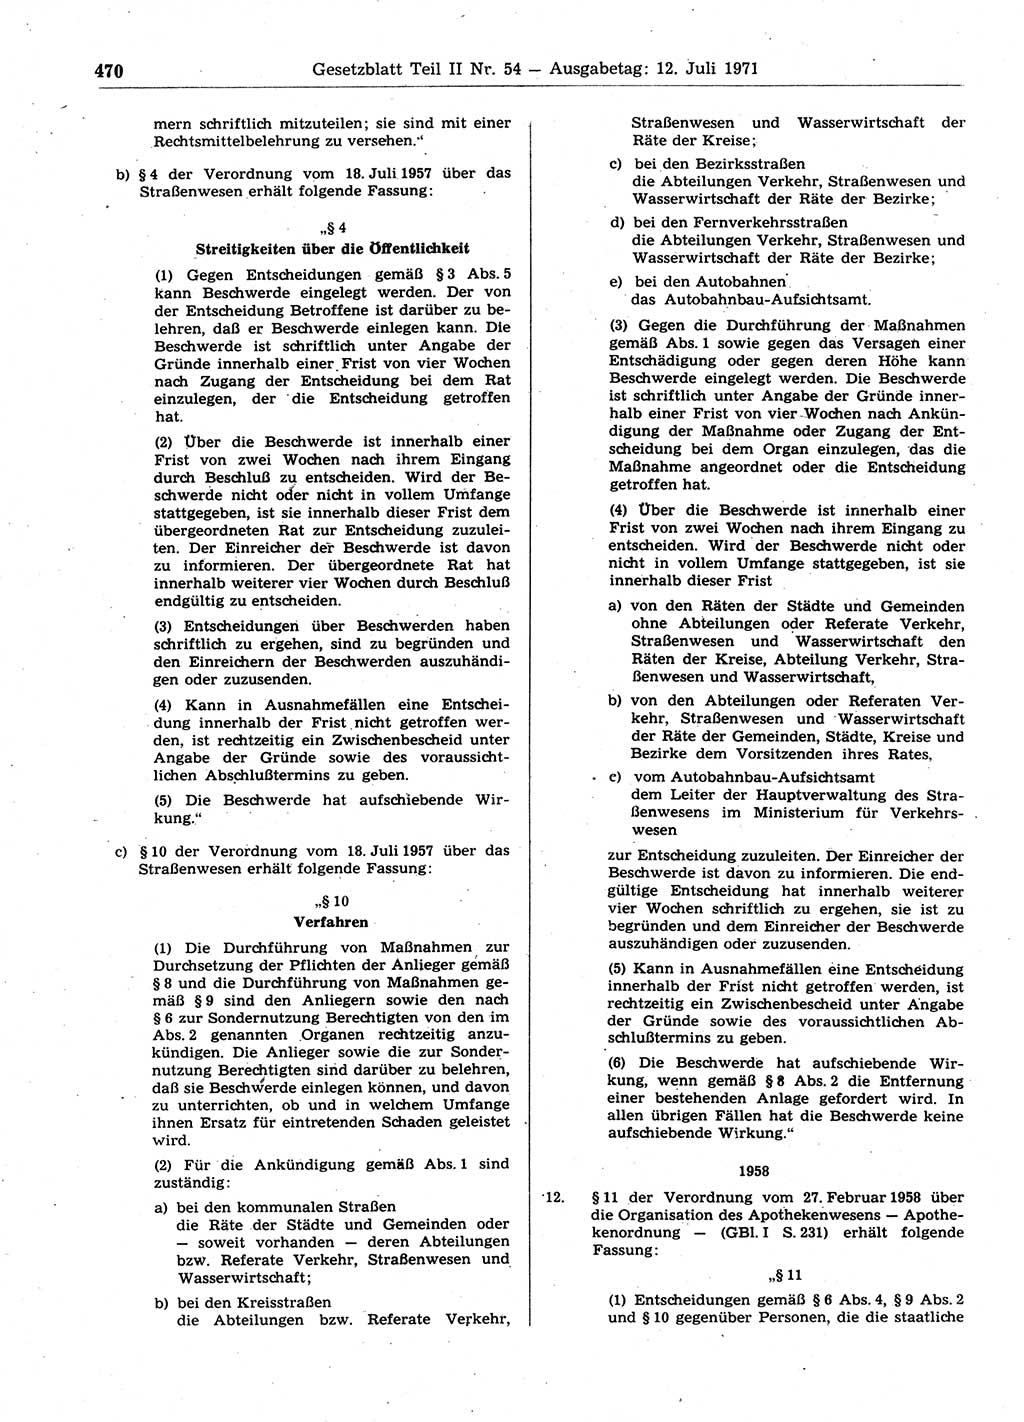 Gesetzblatt (GBl.) der Deutschen Demokratischen Republik (DDR) Teil ⅠⅠ 1971, Seite 470 (GBl. DDR ⅠⅠ 1971, S. 470)